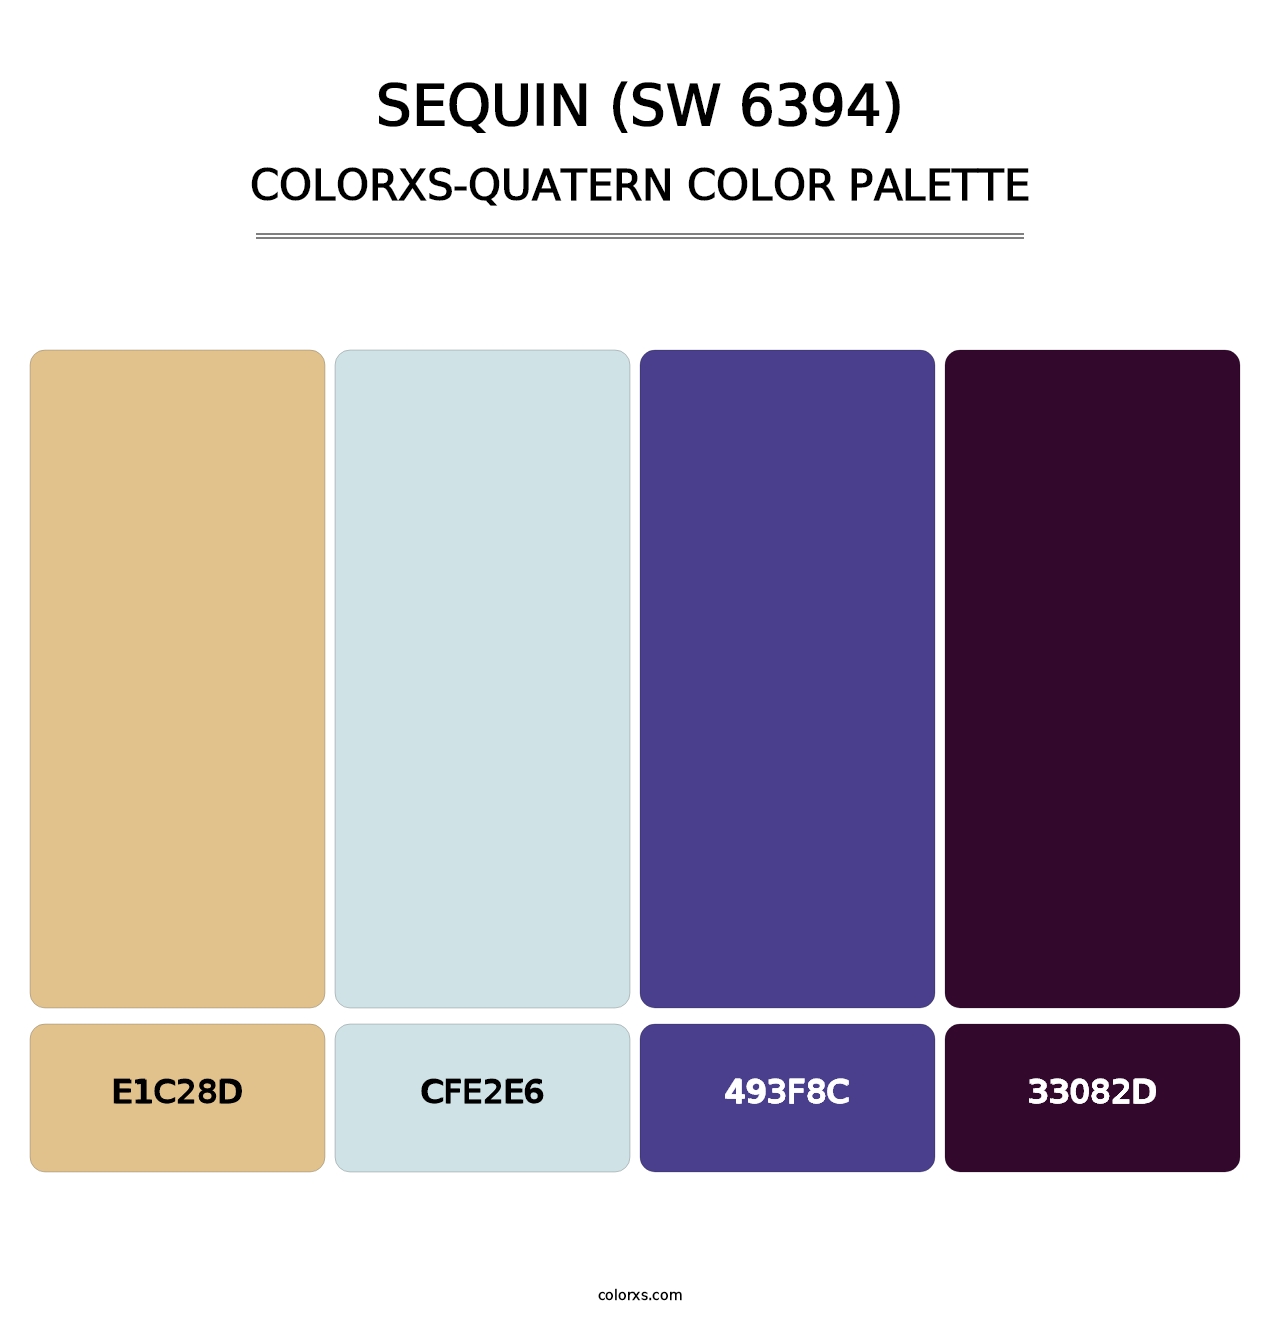 Sequin (SW 6394) - Colorxs Quatern Palette